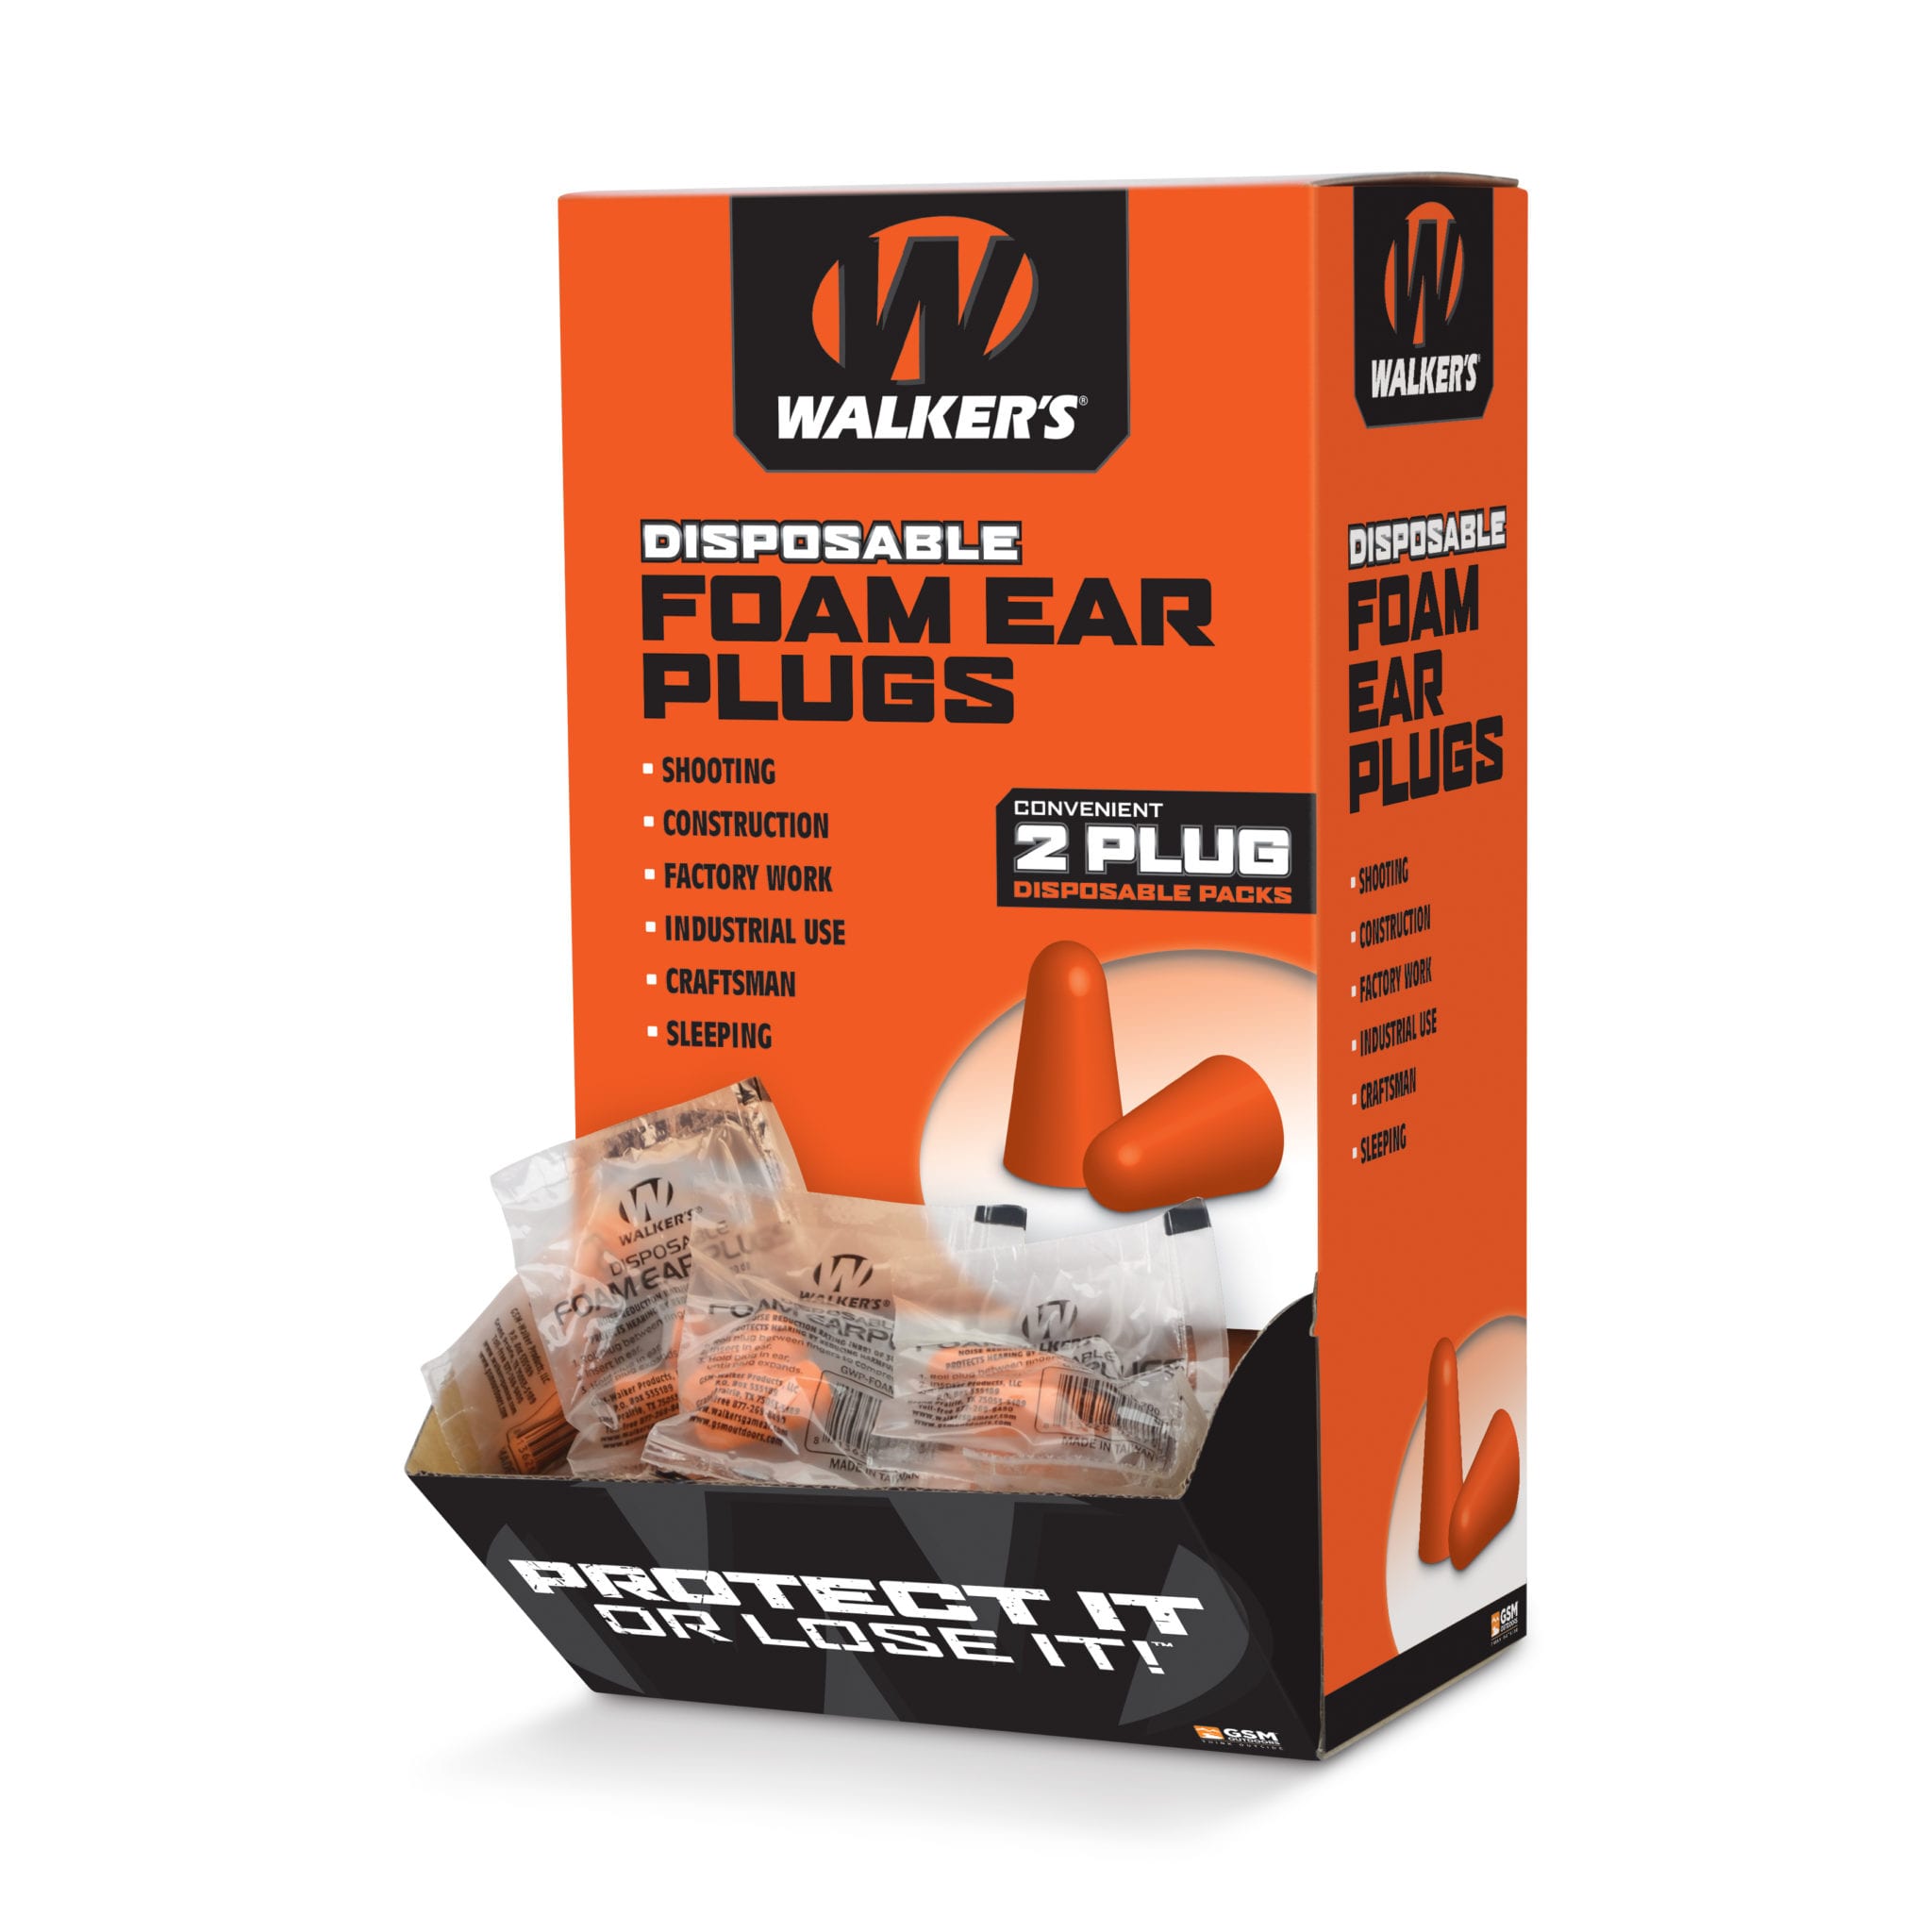 FOAM EAR PLUGS - 200 PAIR BOX - Walker's